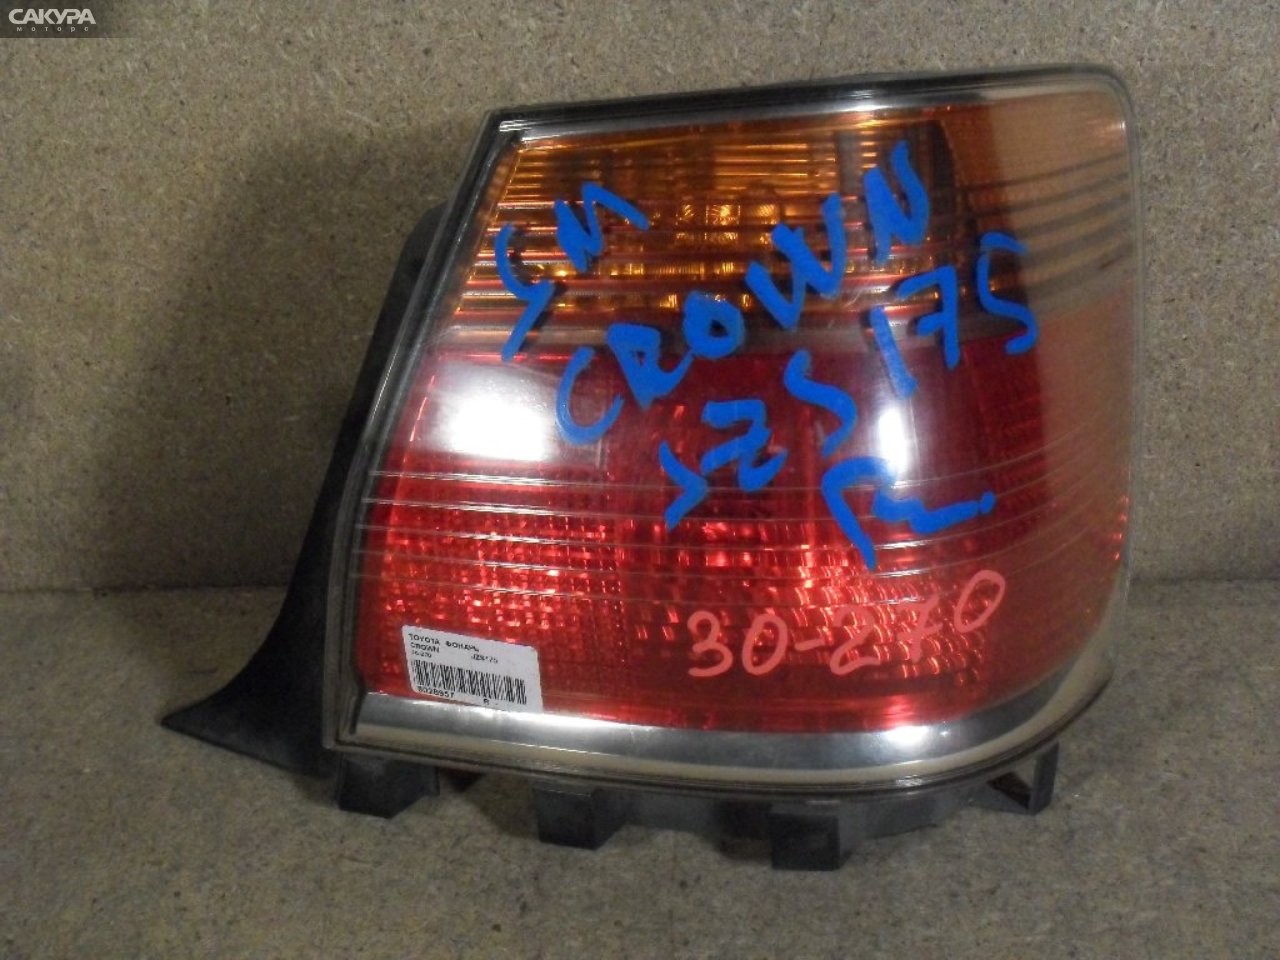 Фонарь стоп-сигнала правый Toyota Crown JZS175 30-270: купить в Сакура Абакан.